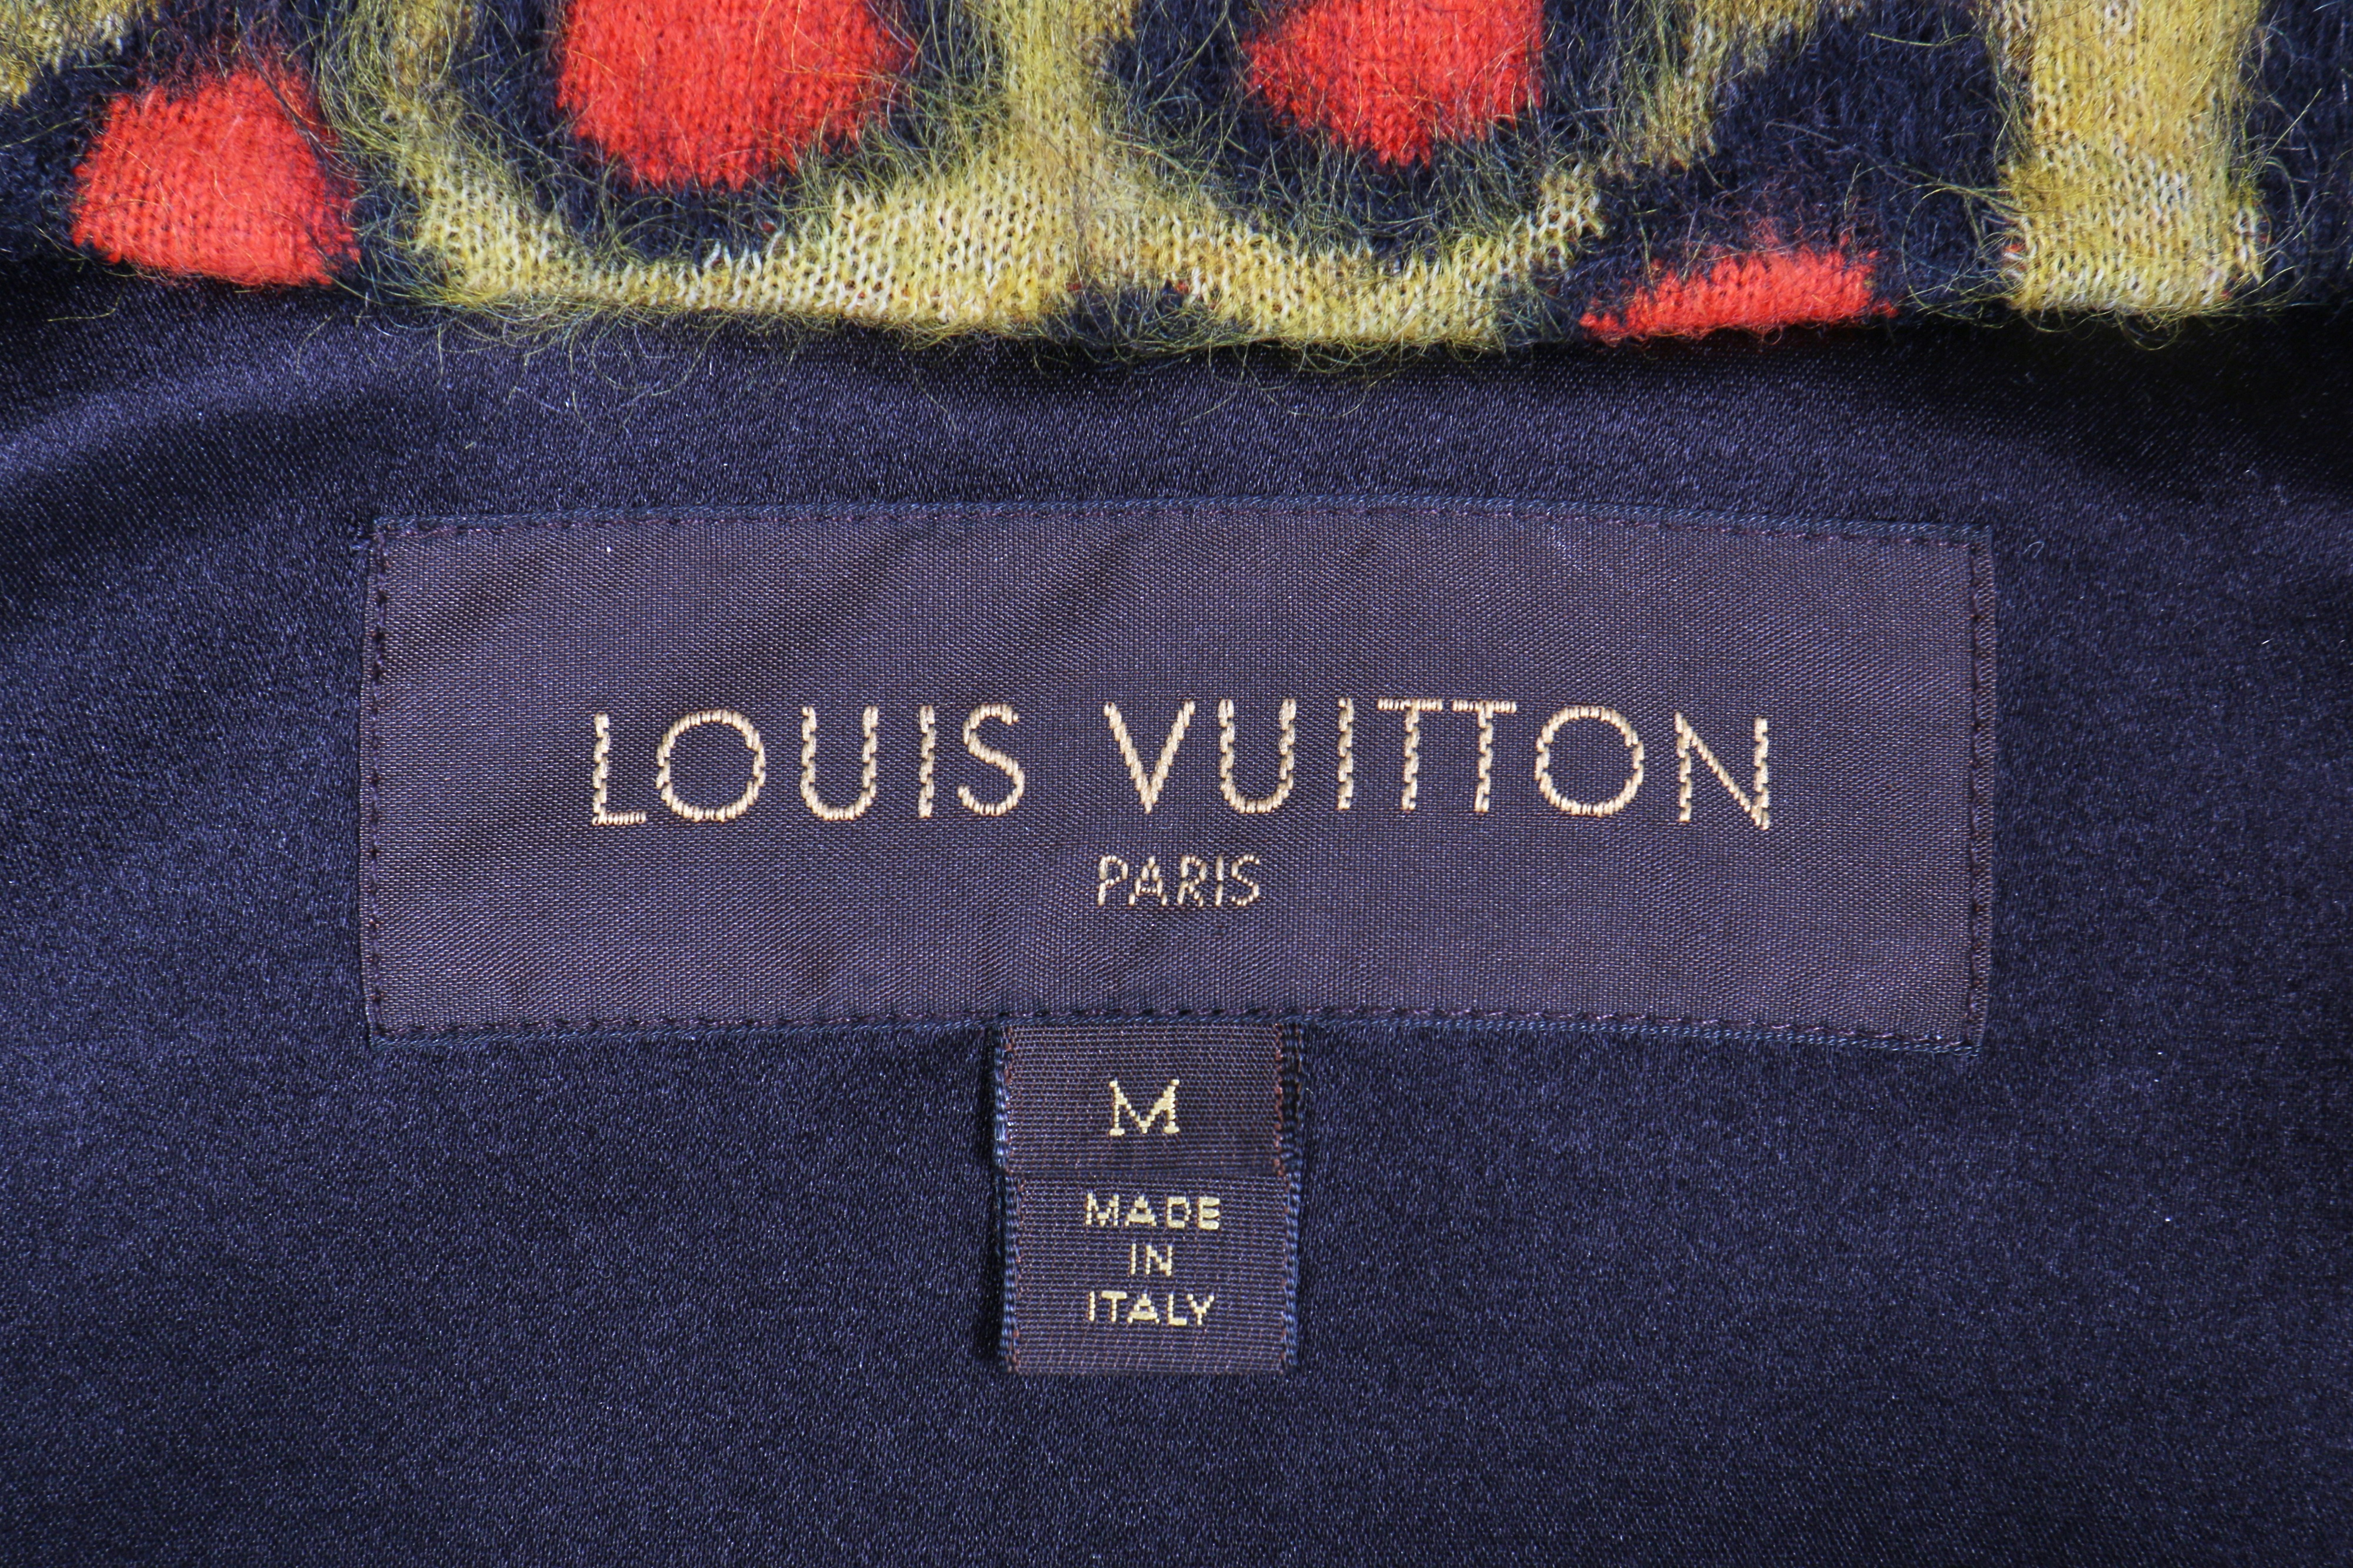 Sold at Auction: Louis Vuitton, Louis VUITTON, Manteau long de